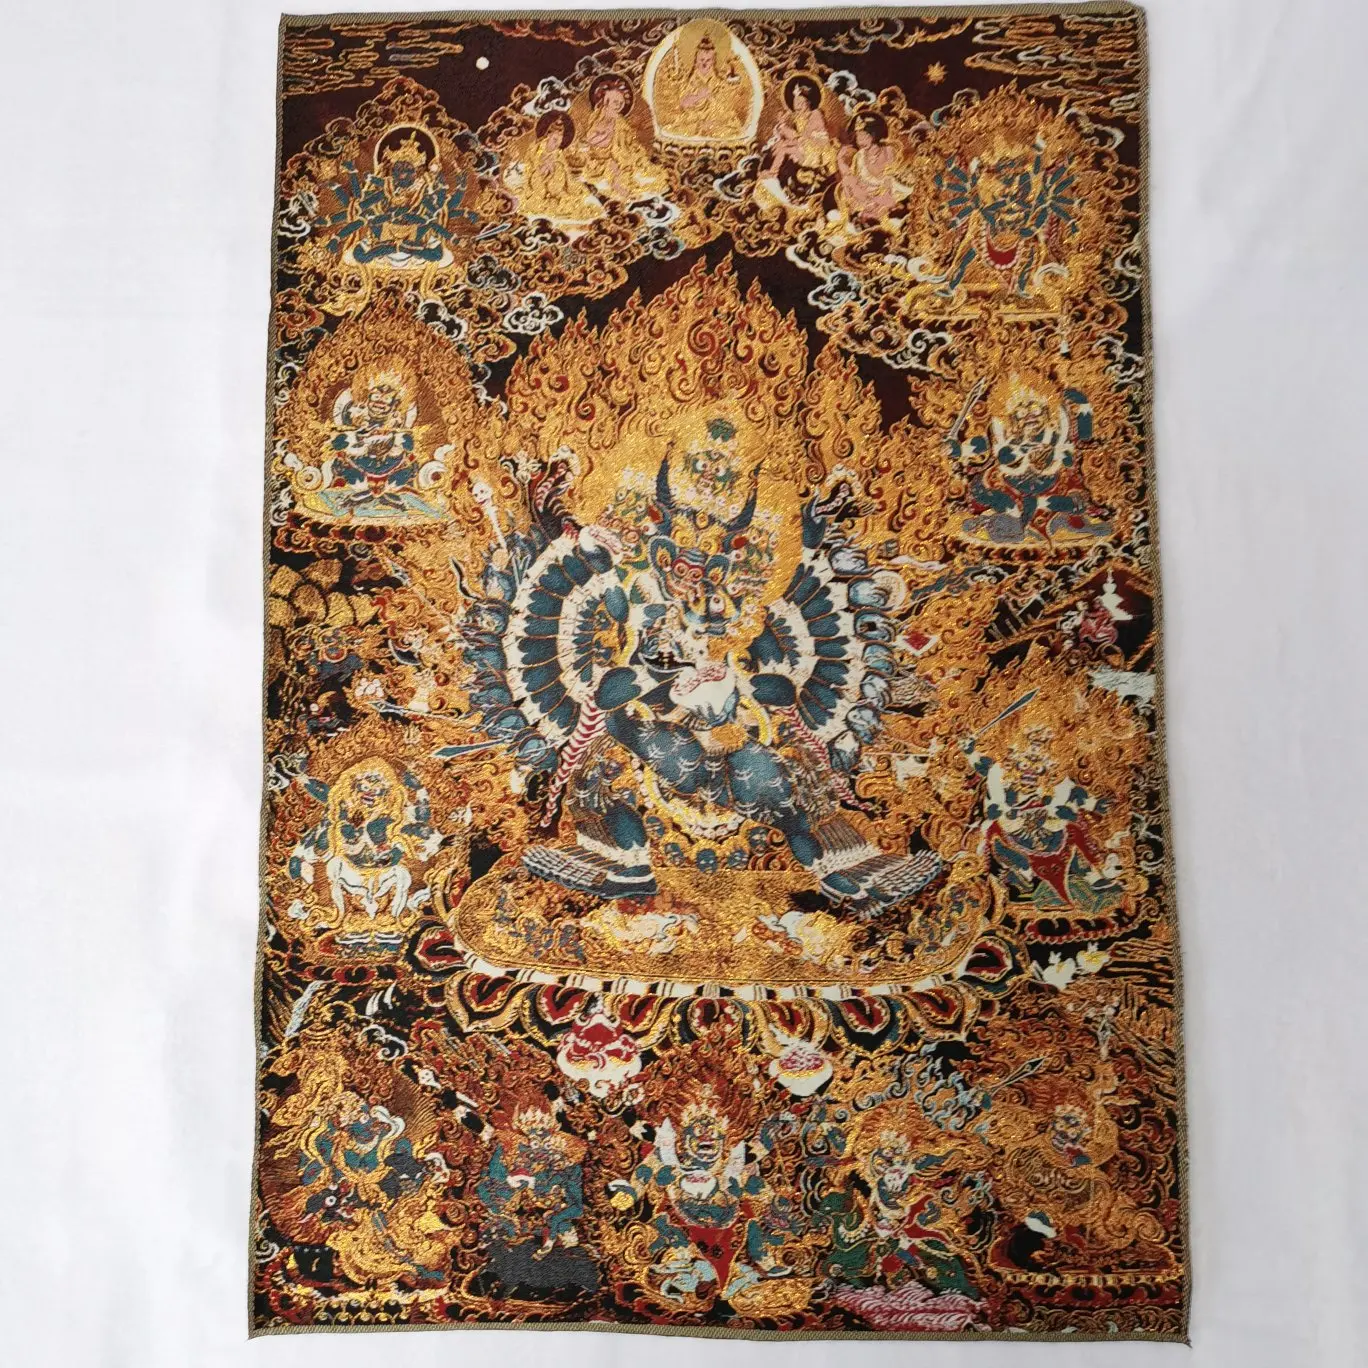 Tela bordada tibetana de 36 pulgadas, Budismo de seda, Buda Yamantaka Tangka Thangka, Mural de Buda para decoración del hogar